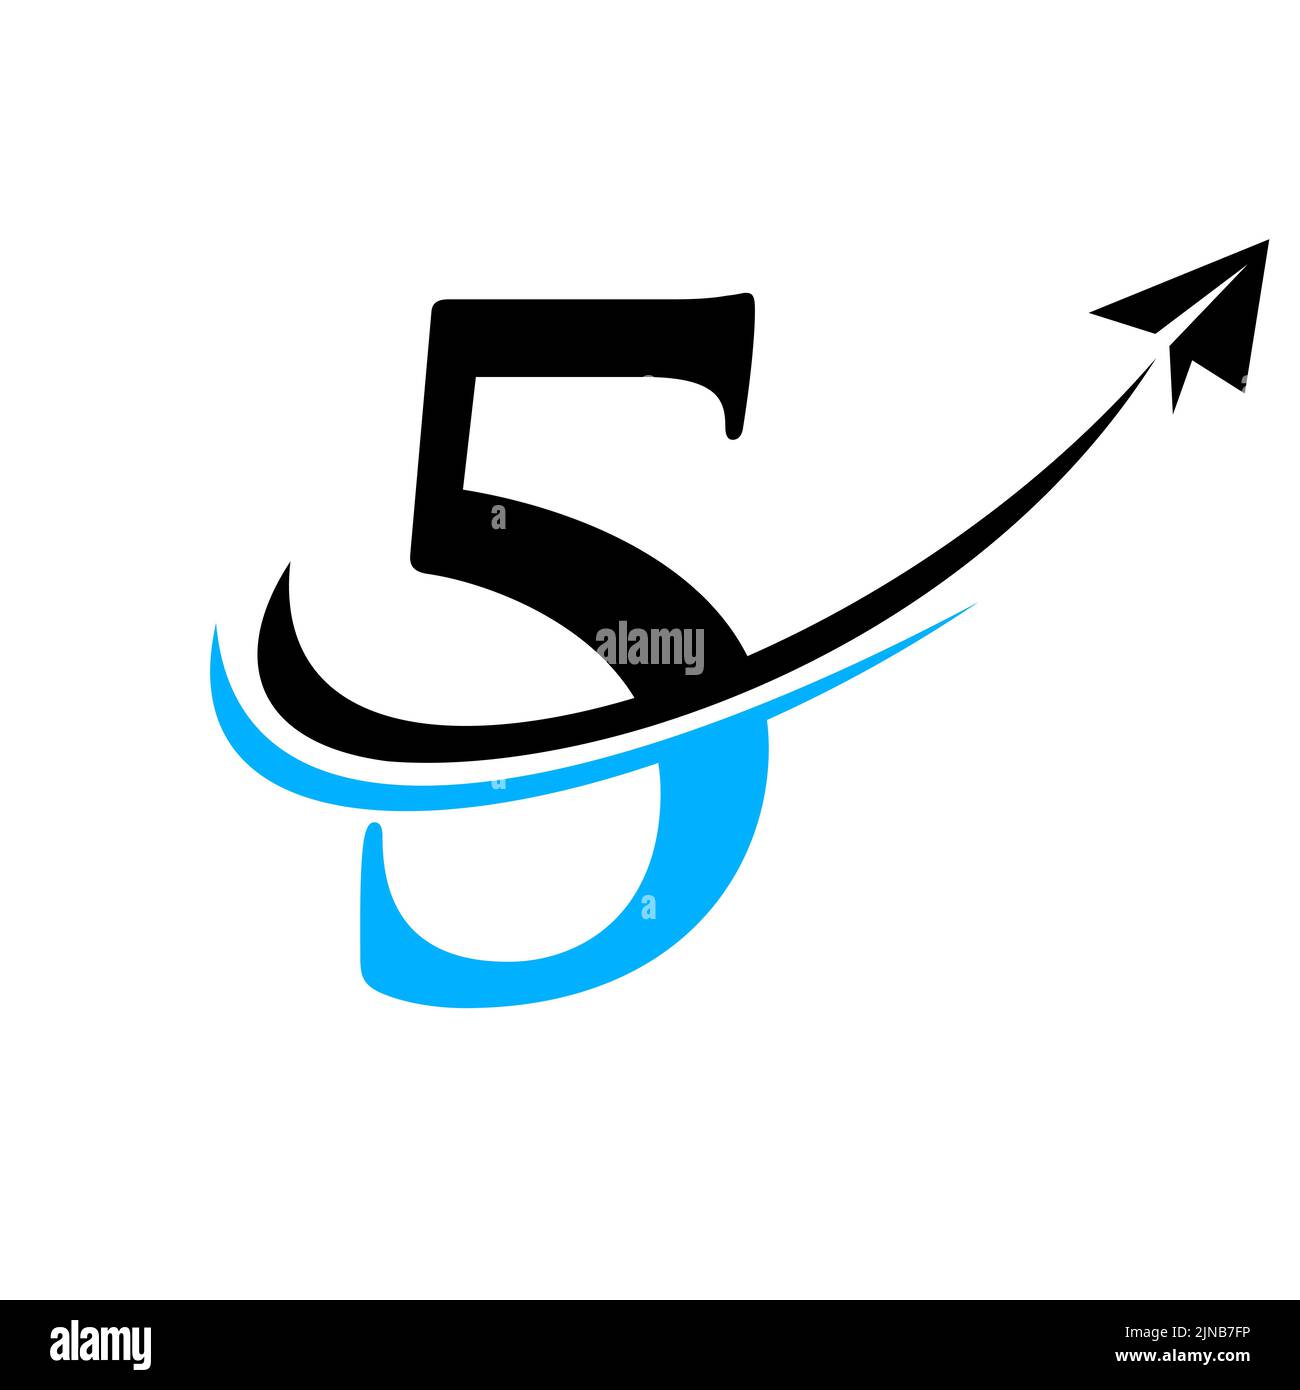 Travel Logo On Letter 5 Vector Template. Letter 5 Air Travel Logo Design Stock Vector